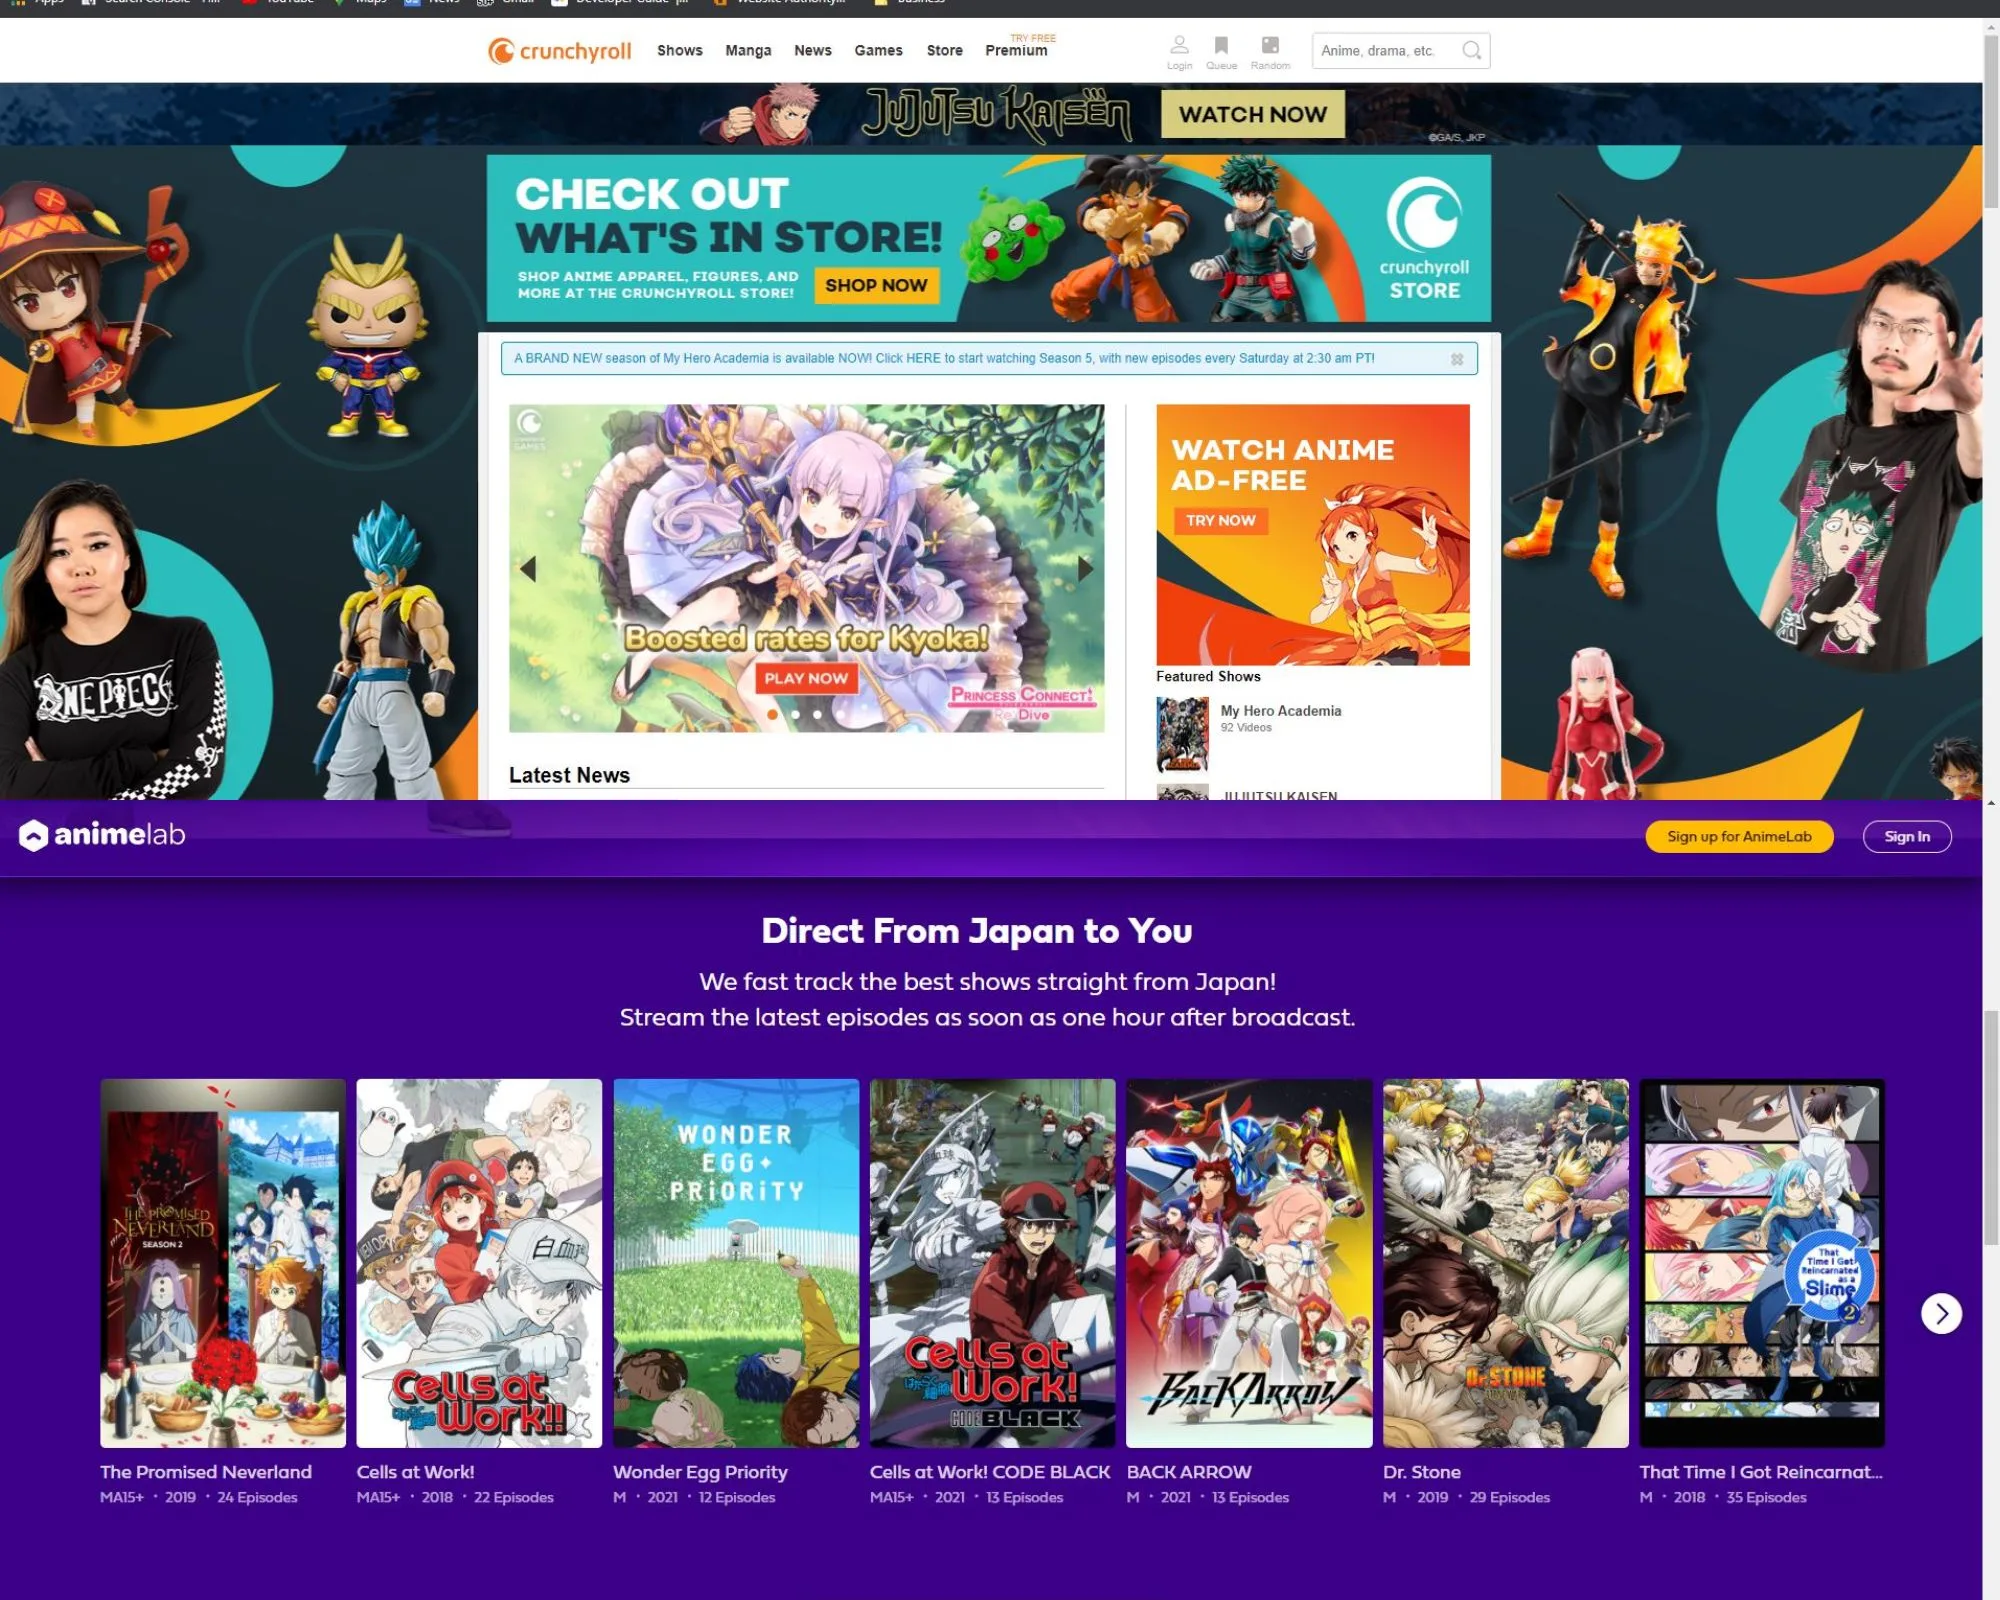 The user interface of Crunchyroll vs AnimeLab